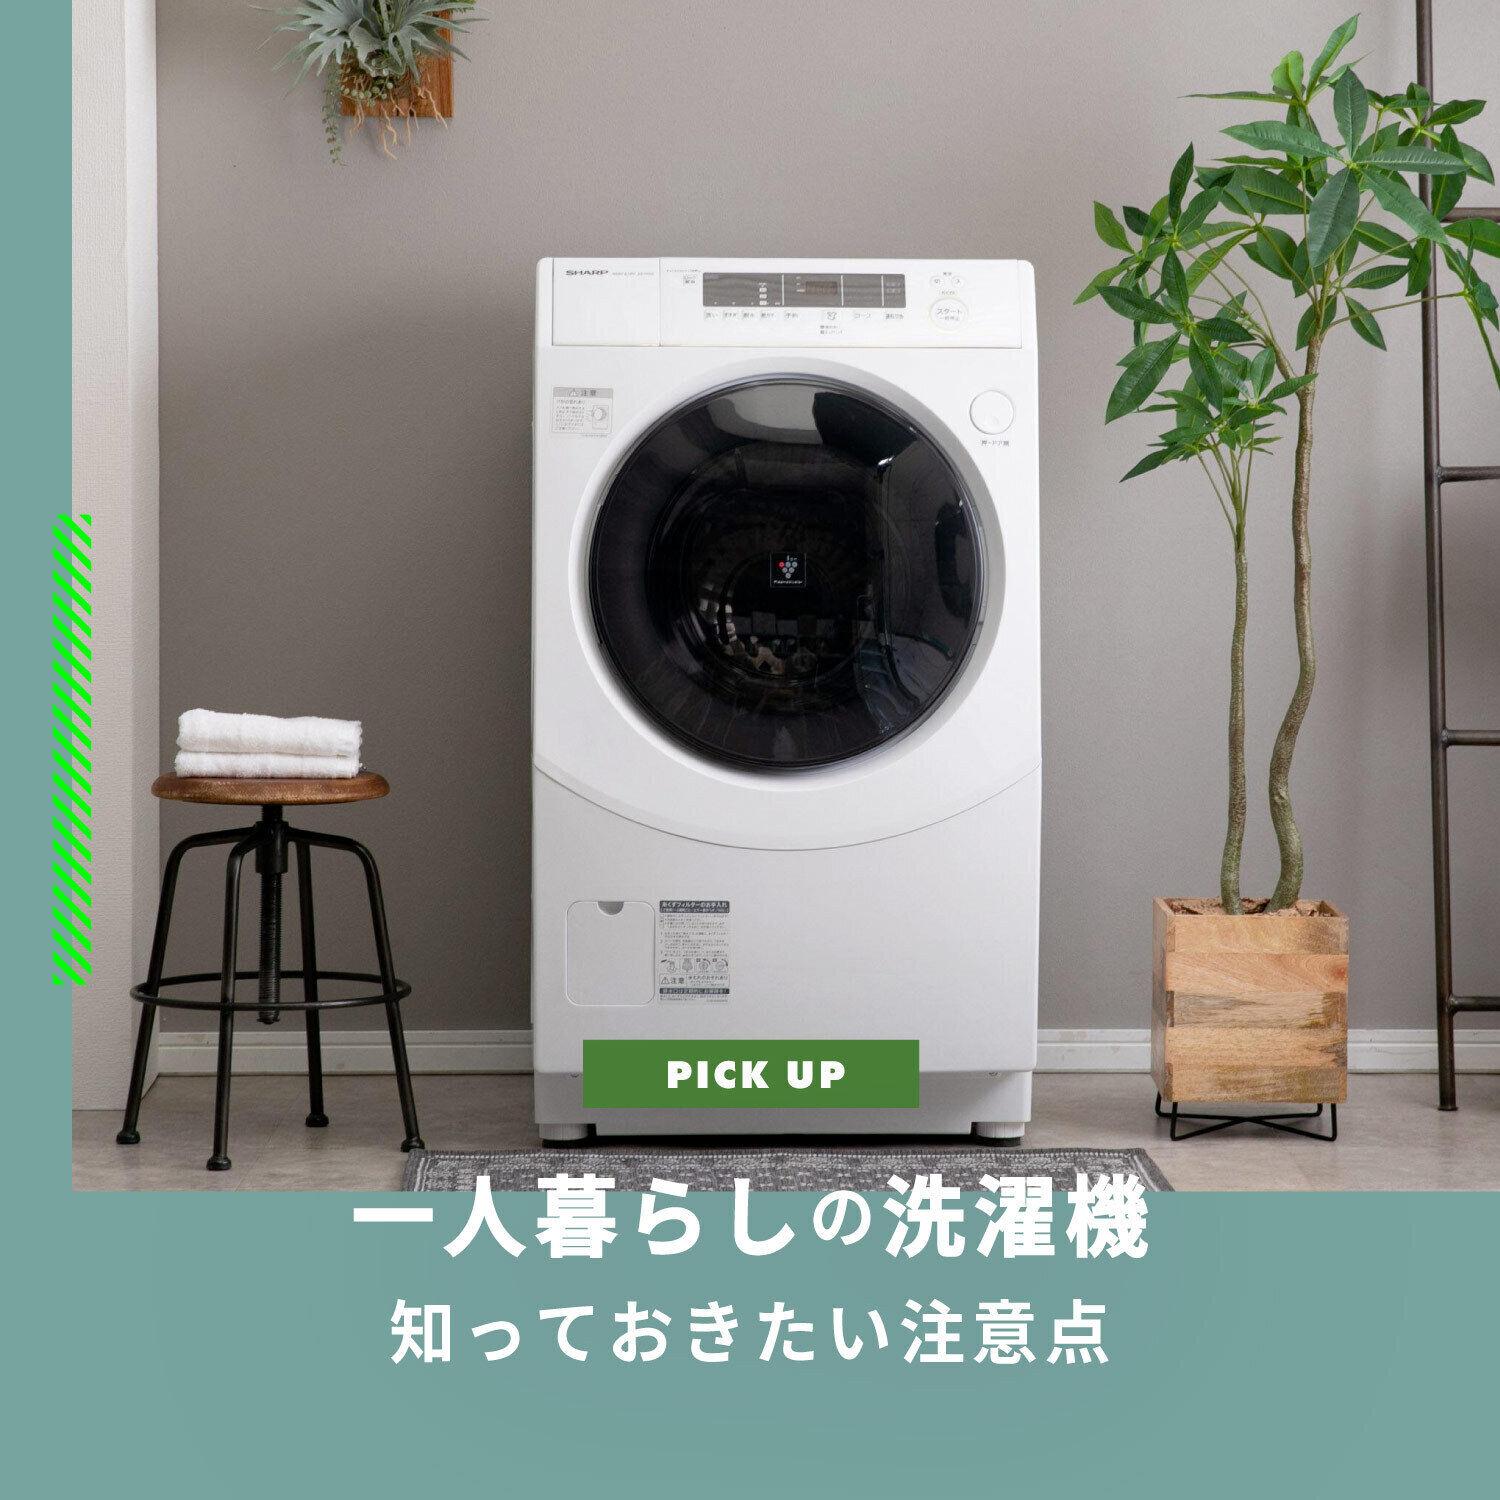 〜商品詳細〜885 冷蔵庫 洗濯機 最新人気モデル セット 一人暮らし 小型